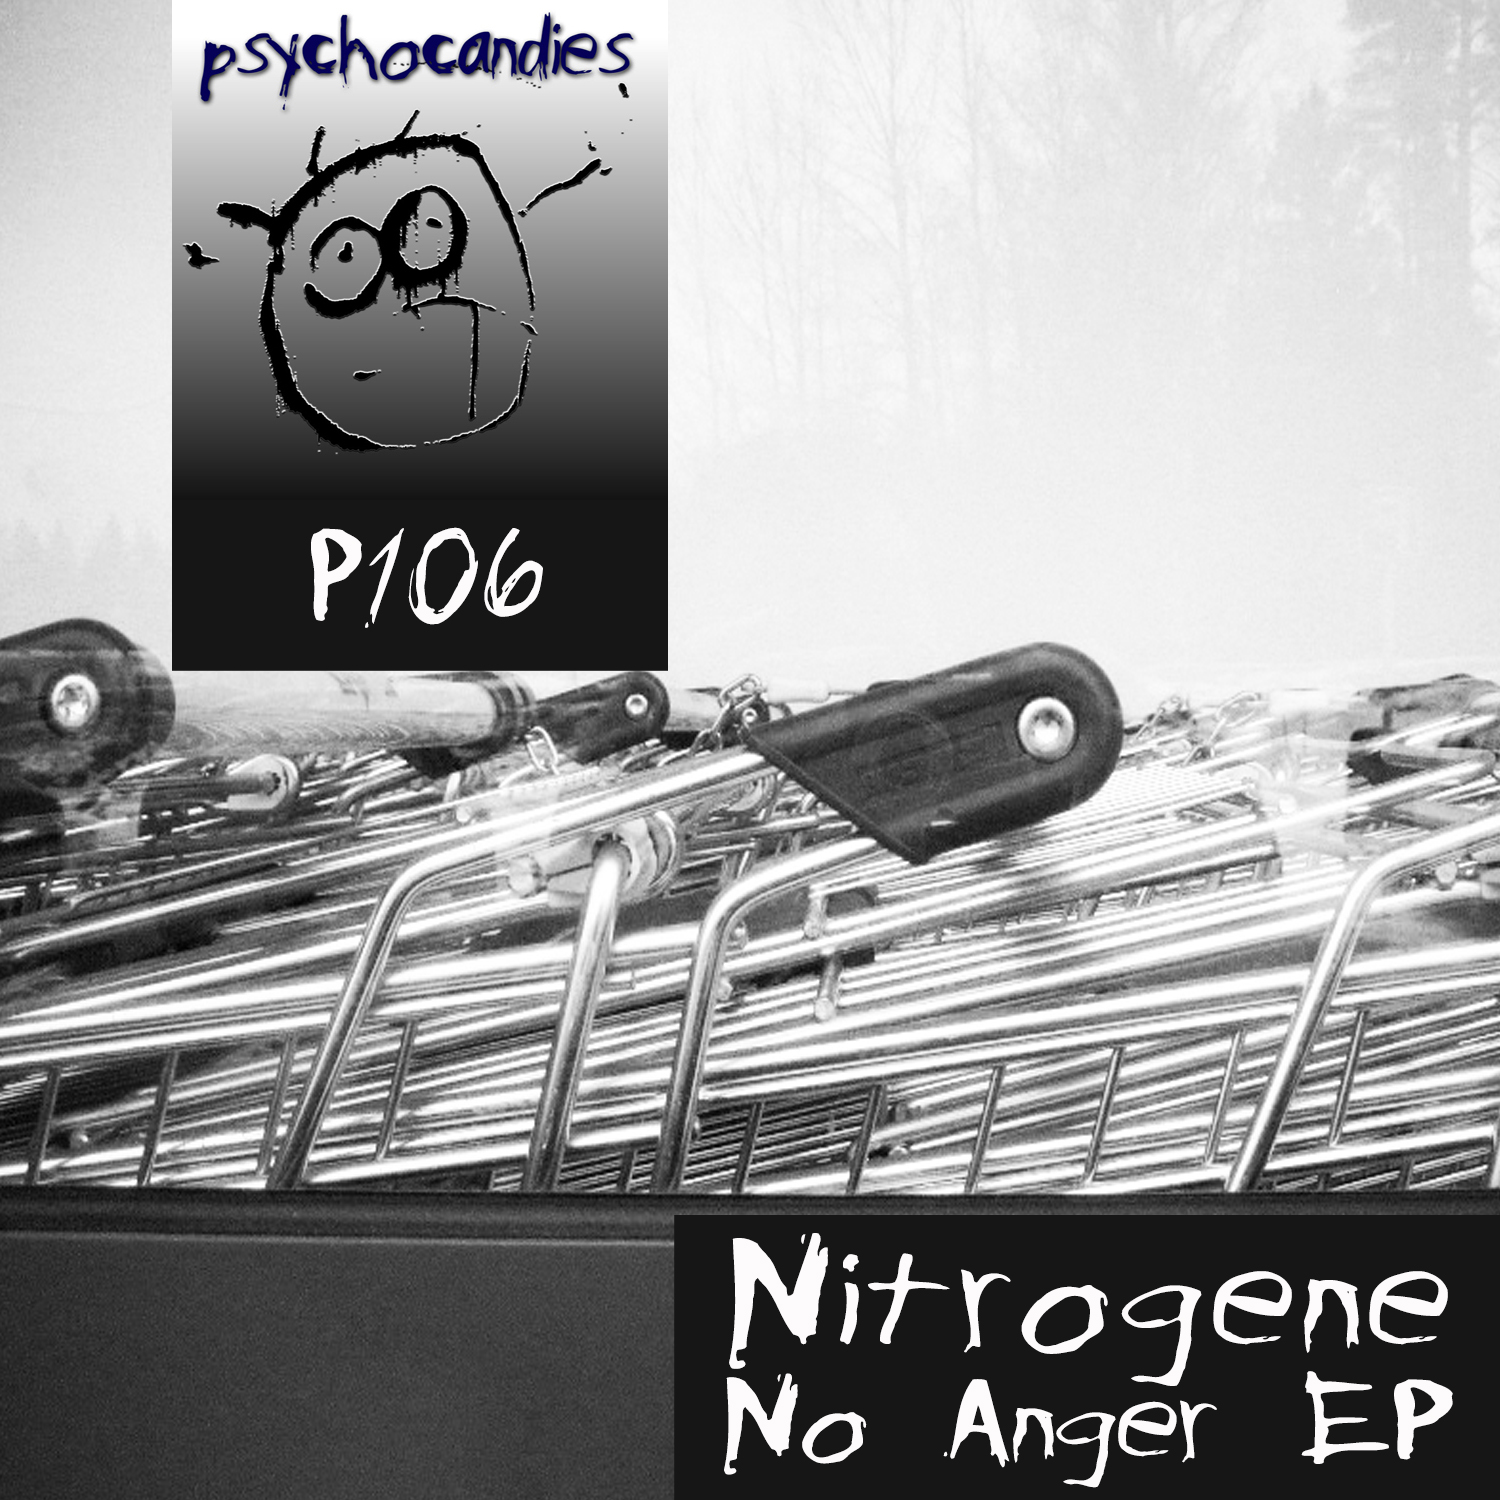 Nitrogene – No Anger EP